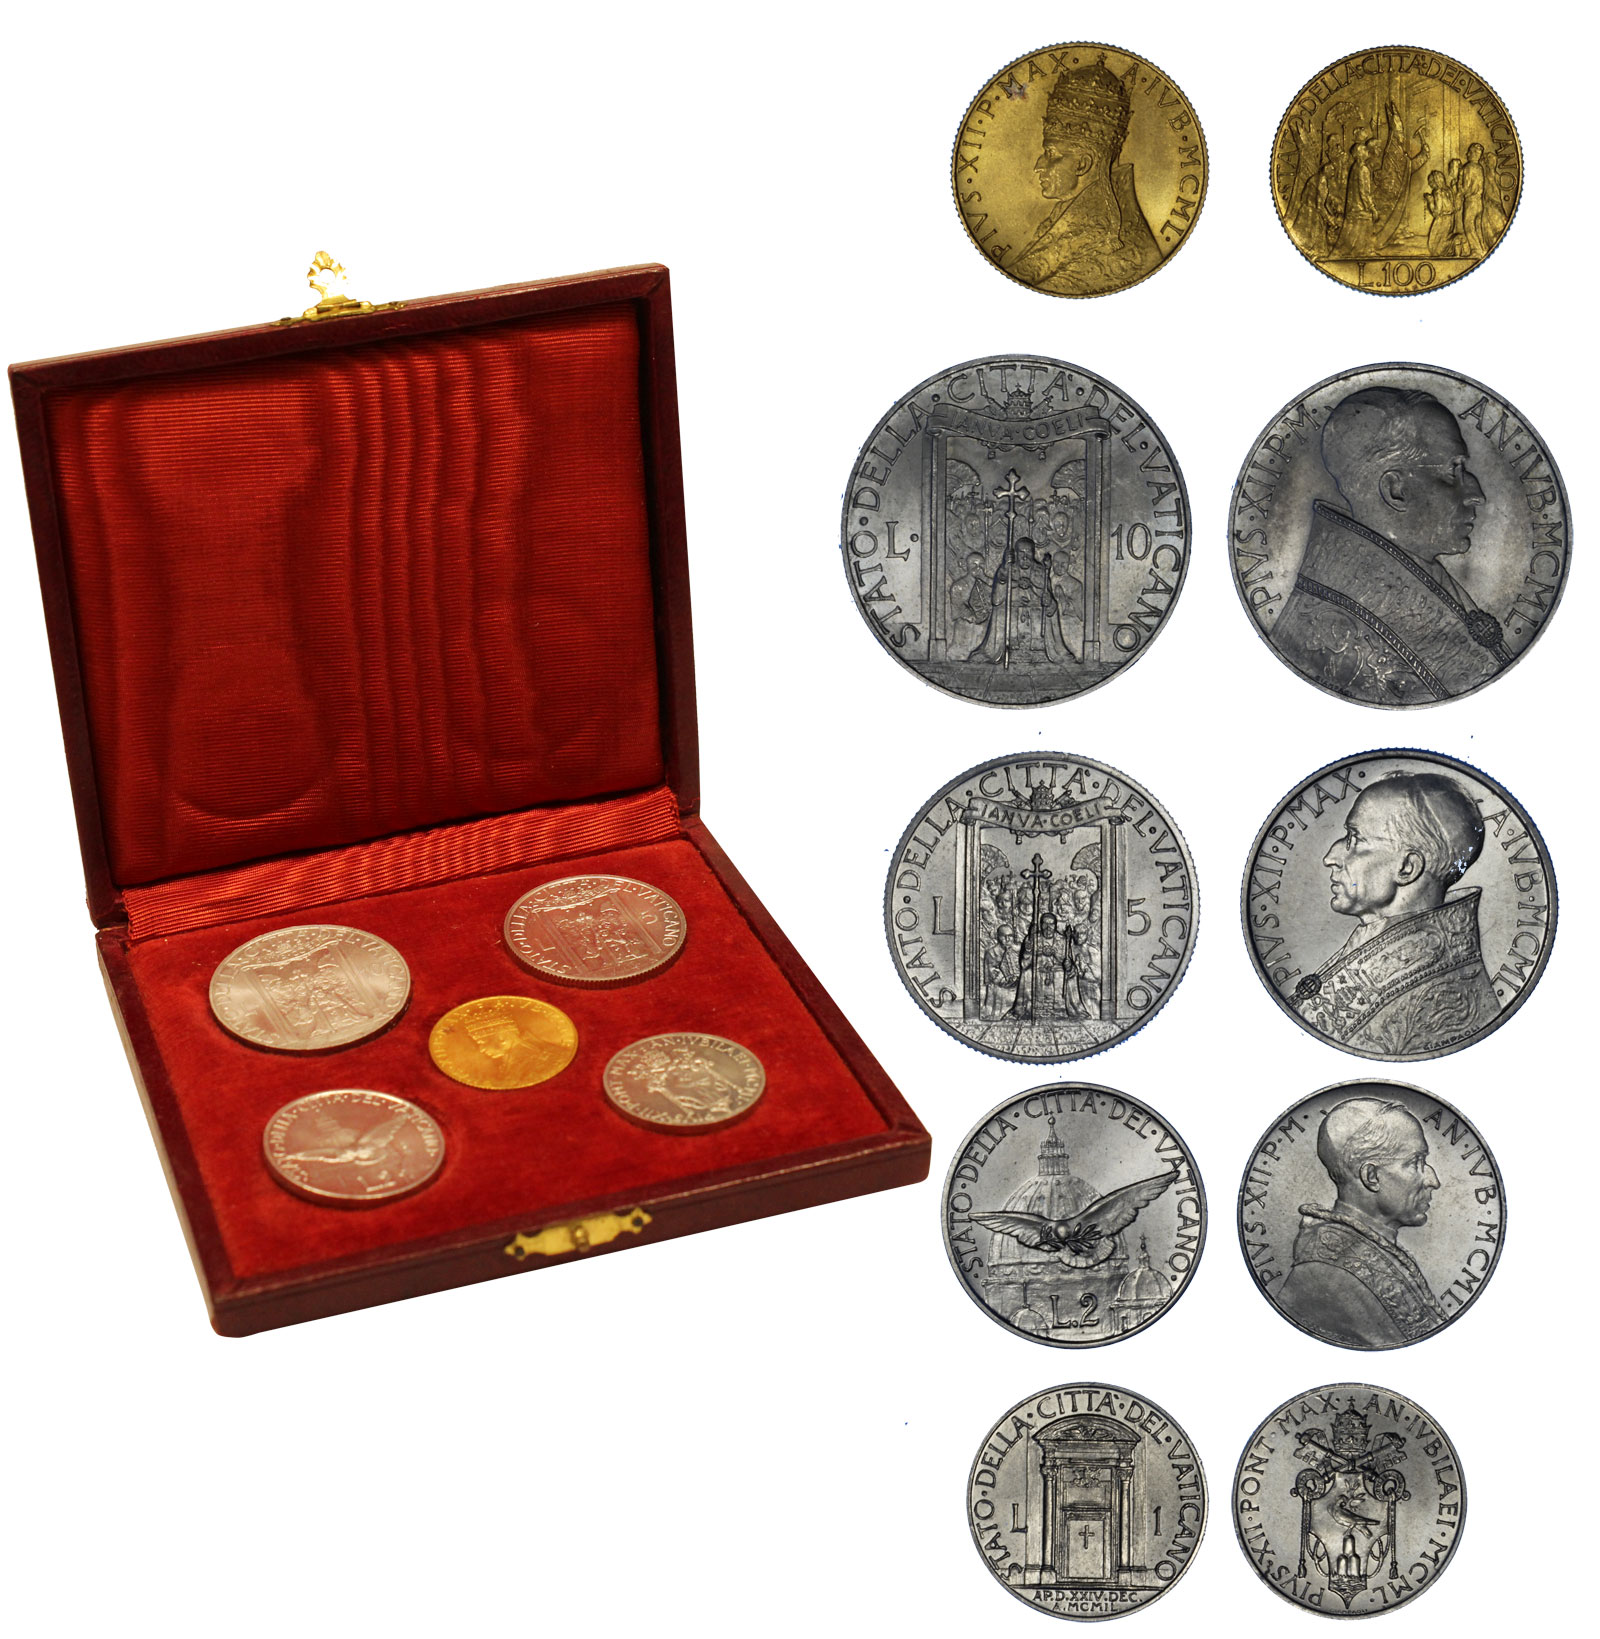  "Papa Pio XII" - Serie completa da Lire 100 di gr. 5,19 in oro 900/000 e 5 monete da L. 1- 2 - 5 - 10 in nickel  - conf. originale - PREZZO SPECIALE!!